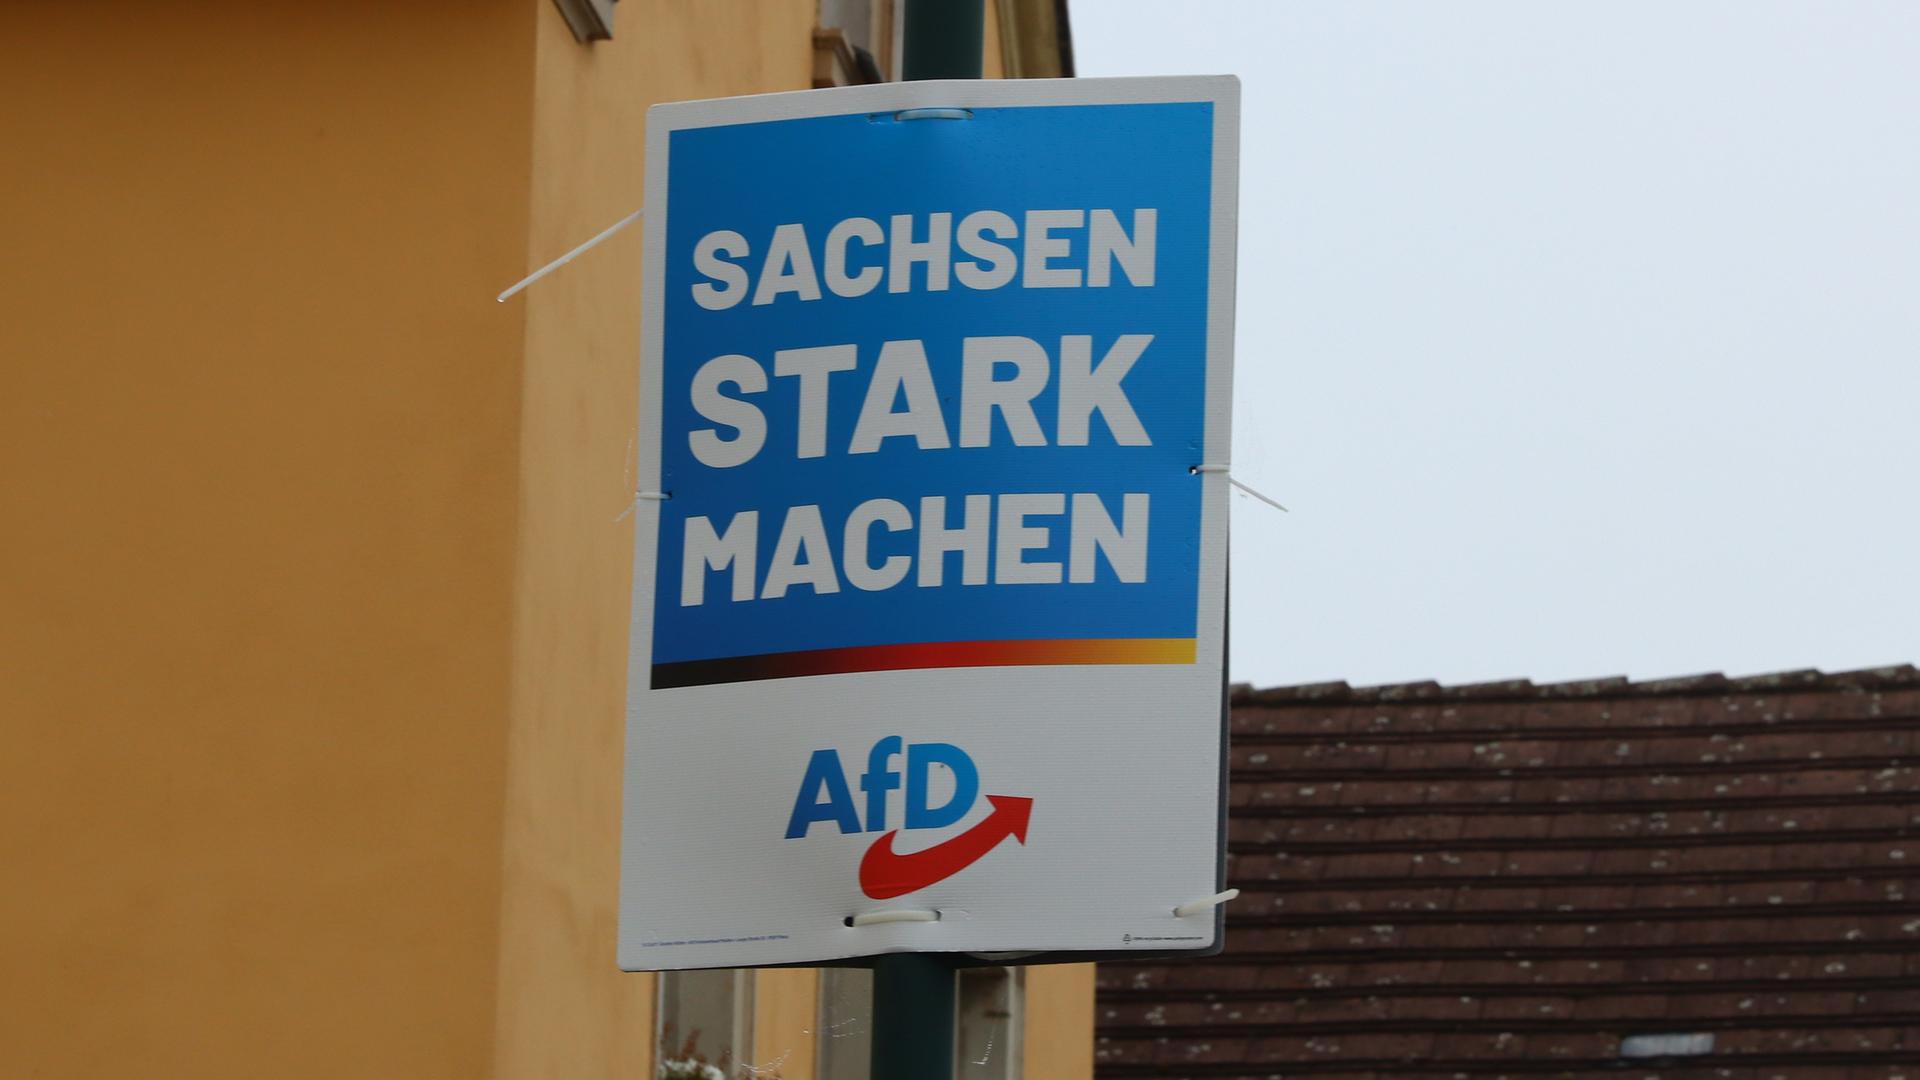 AfDäWahlplakat im Bundesland Sachsen. Darauf steht: Sachsen stark machen - AfD.